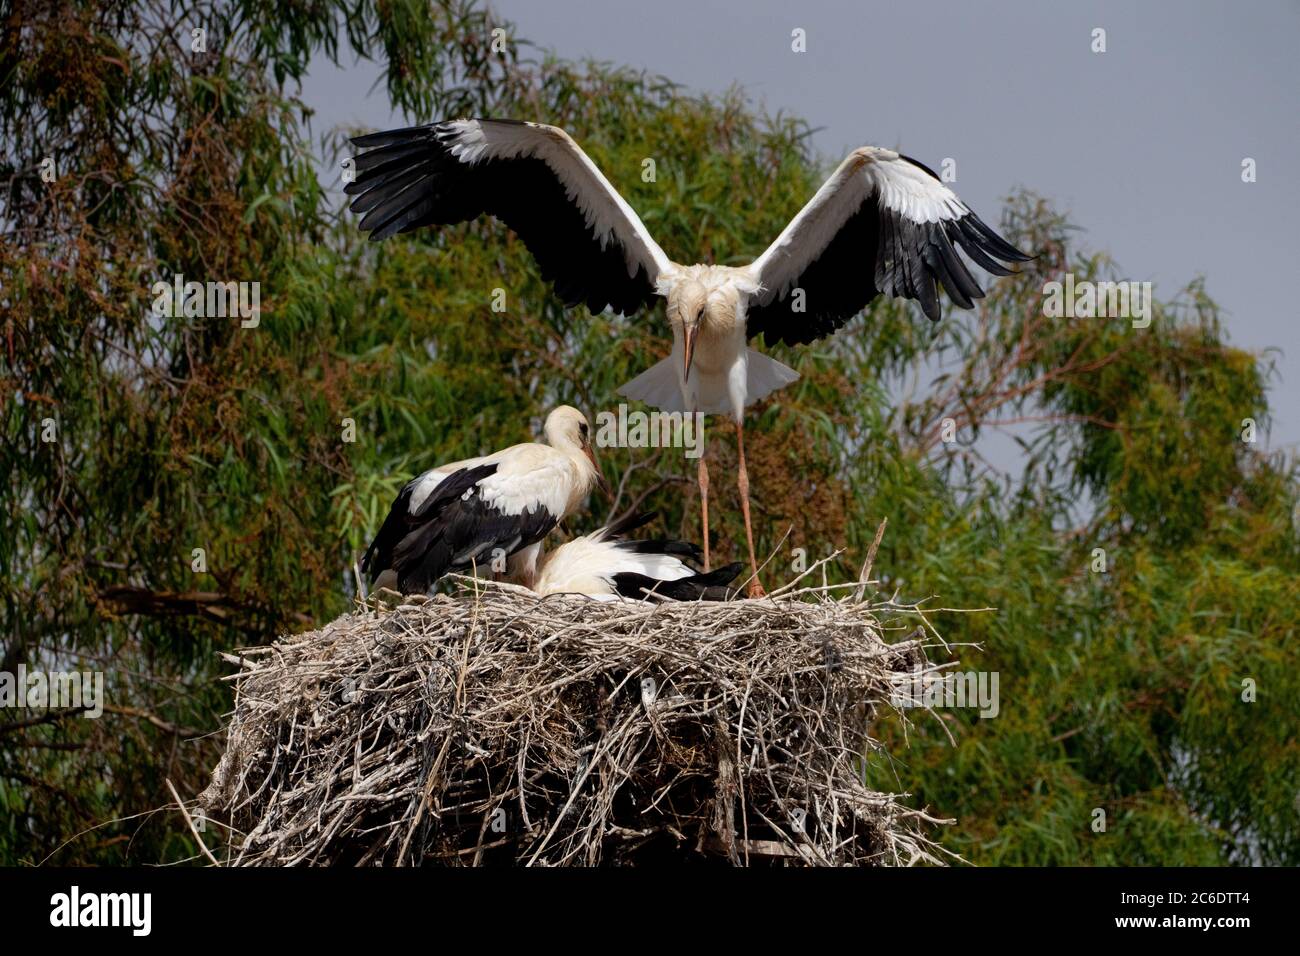 Nest of a White Stork (Ciconia ciconia) gli adulti stanno nutrendo i giovani fotografati in Israele a giugno Foto Stock